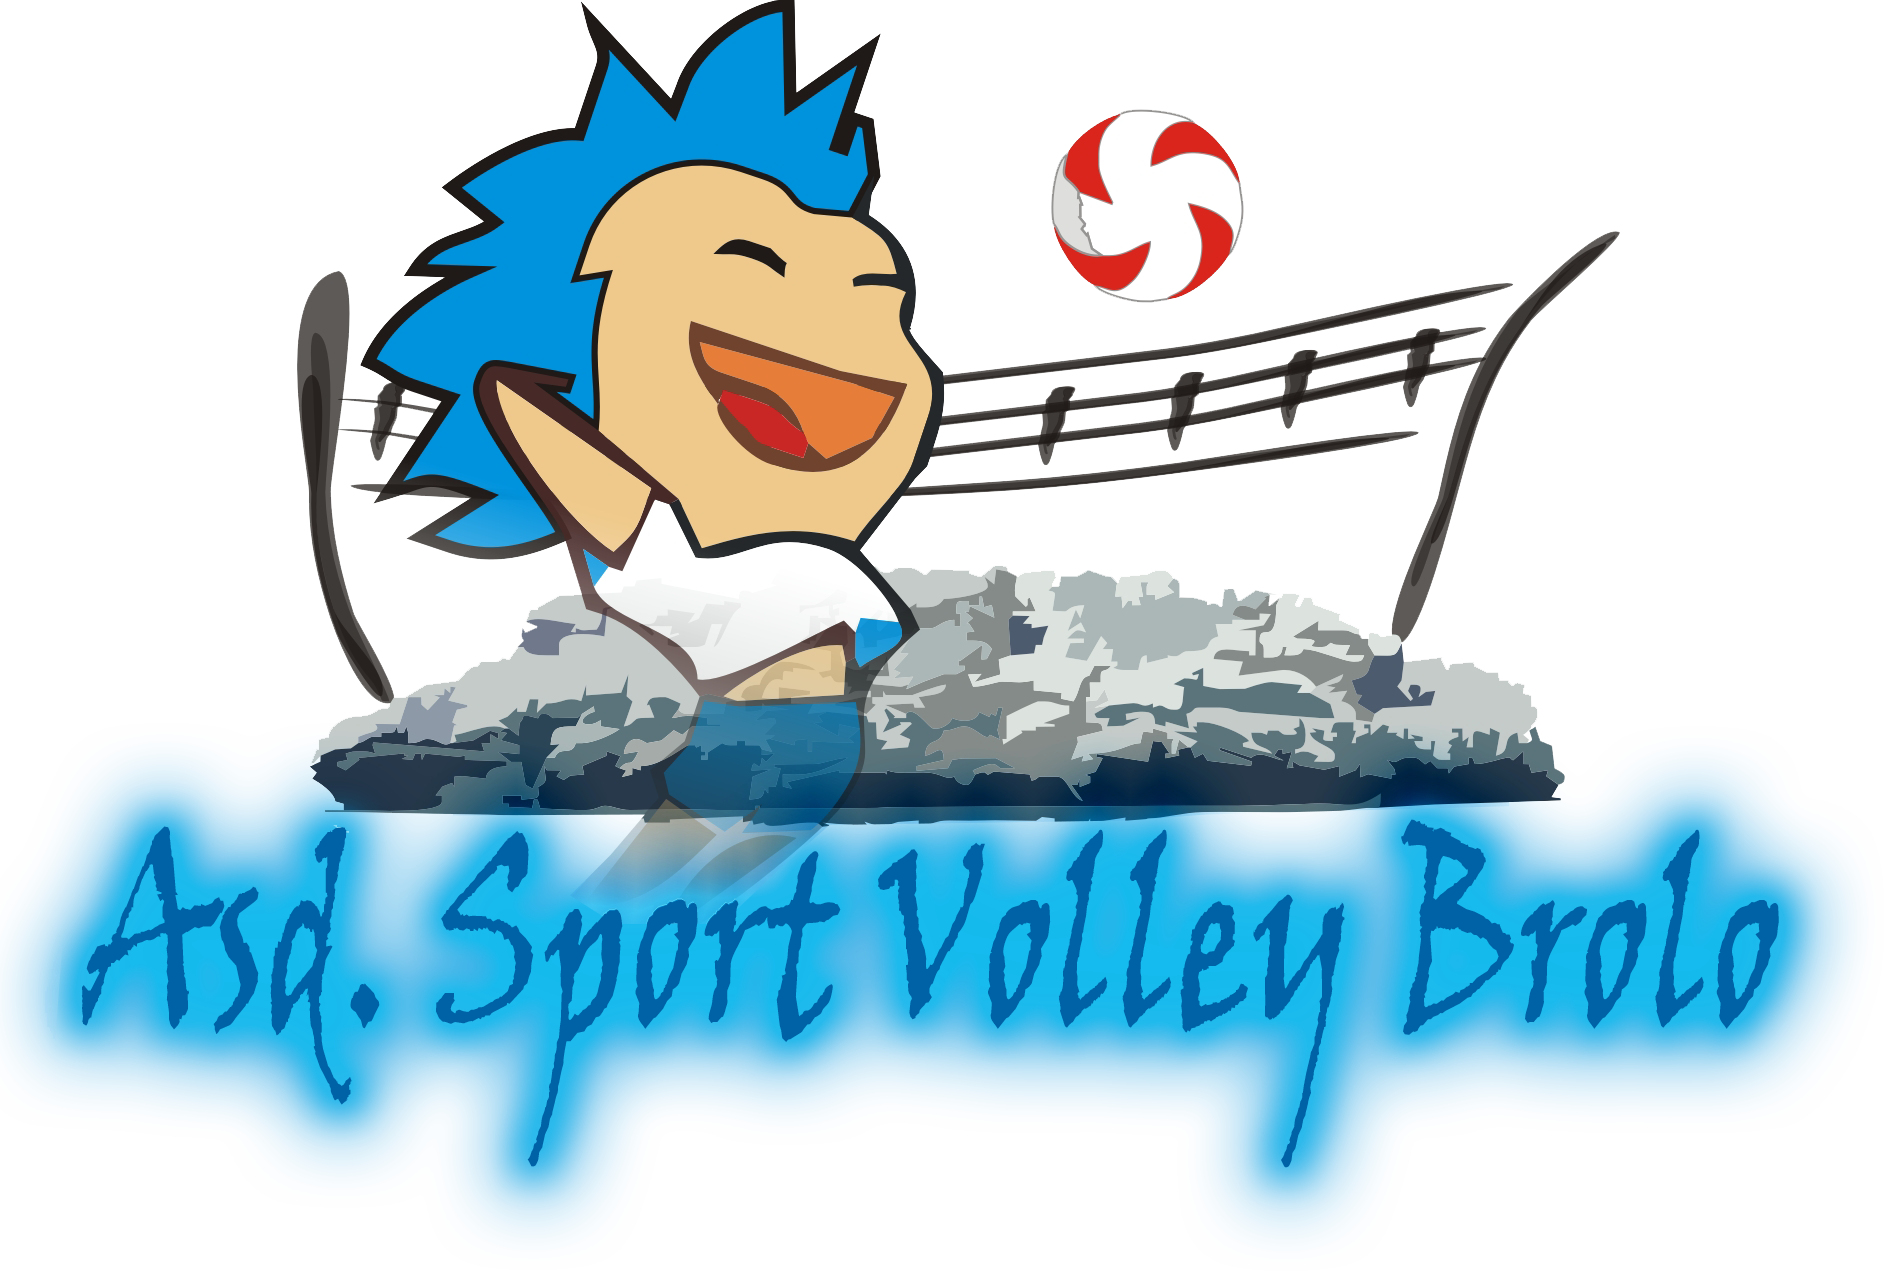 ASD Sport Volley Brolo in trasferta a Partanna per incontrare Atria Volley.